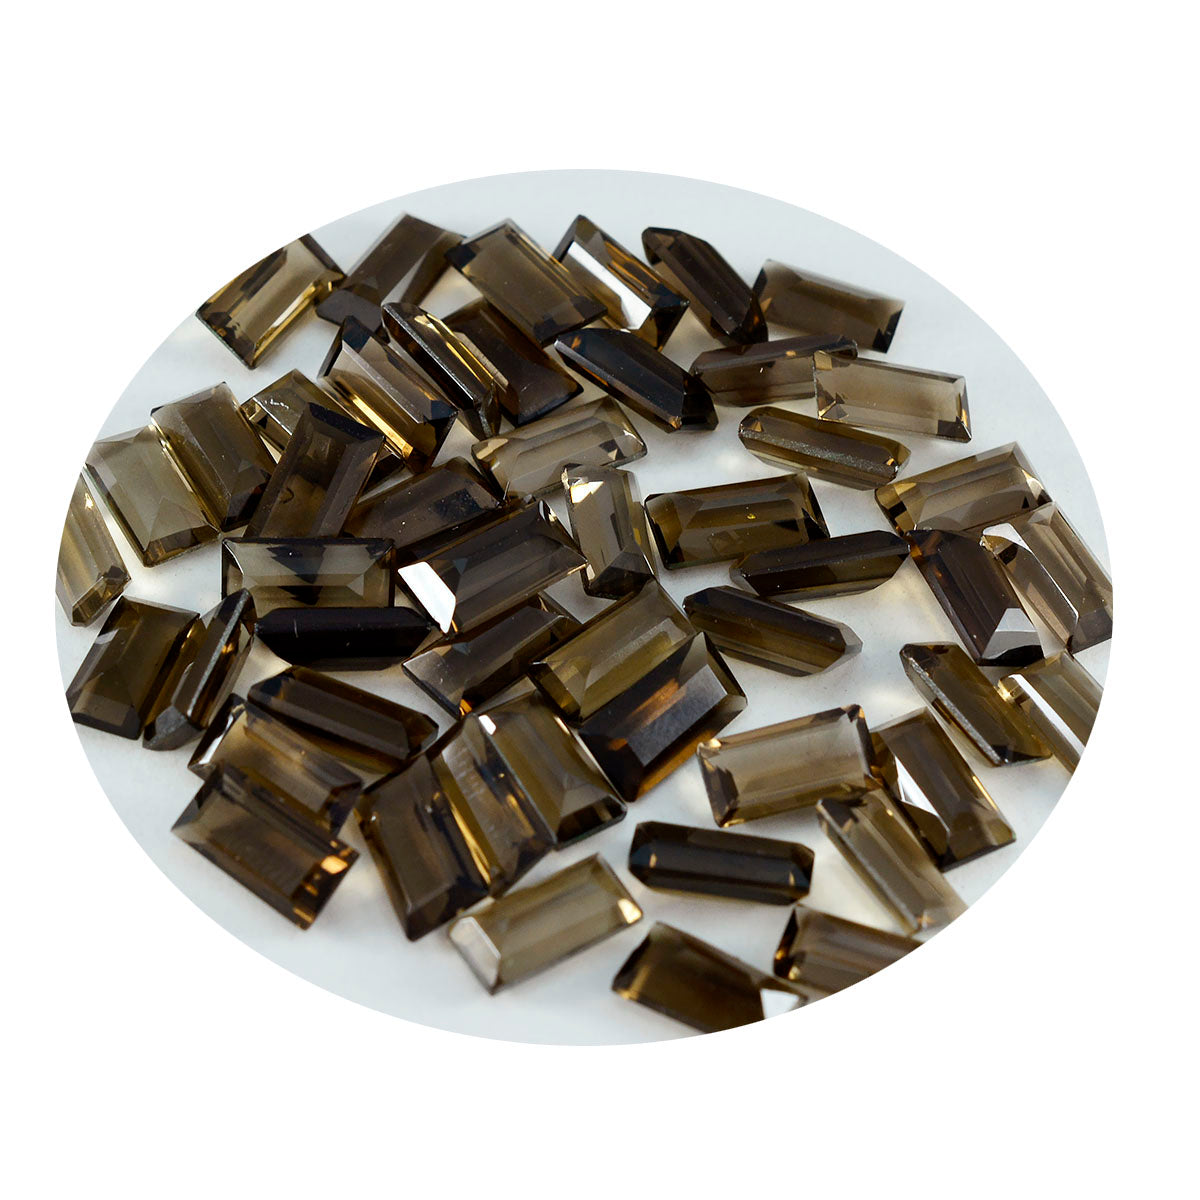 riyogems 1 шт. натуральный коричневый дымчатый кварц граненый 3x6 мм в форме багета качественный сыпучий камень